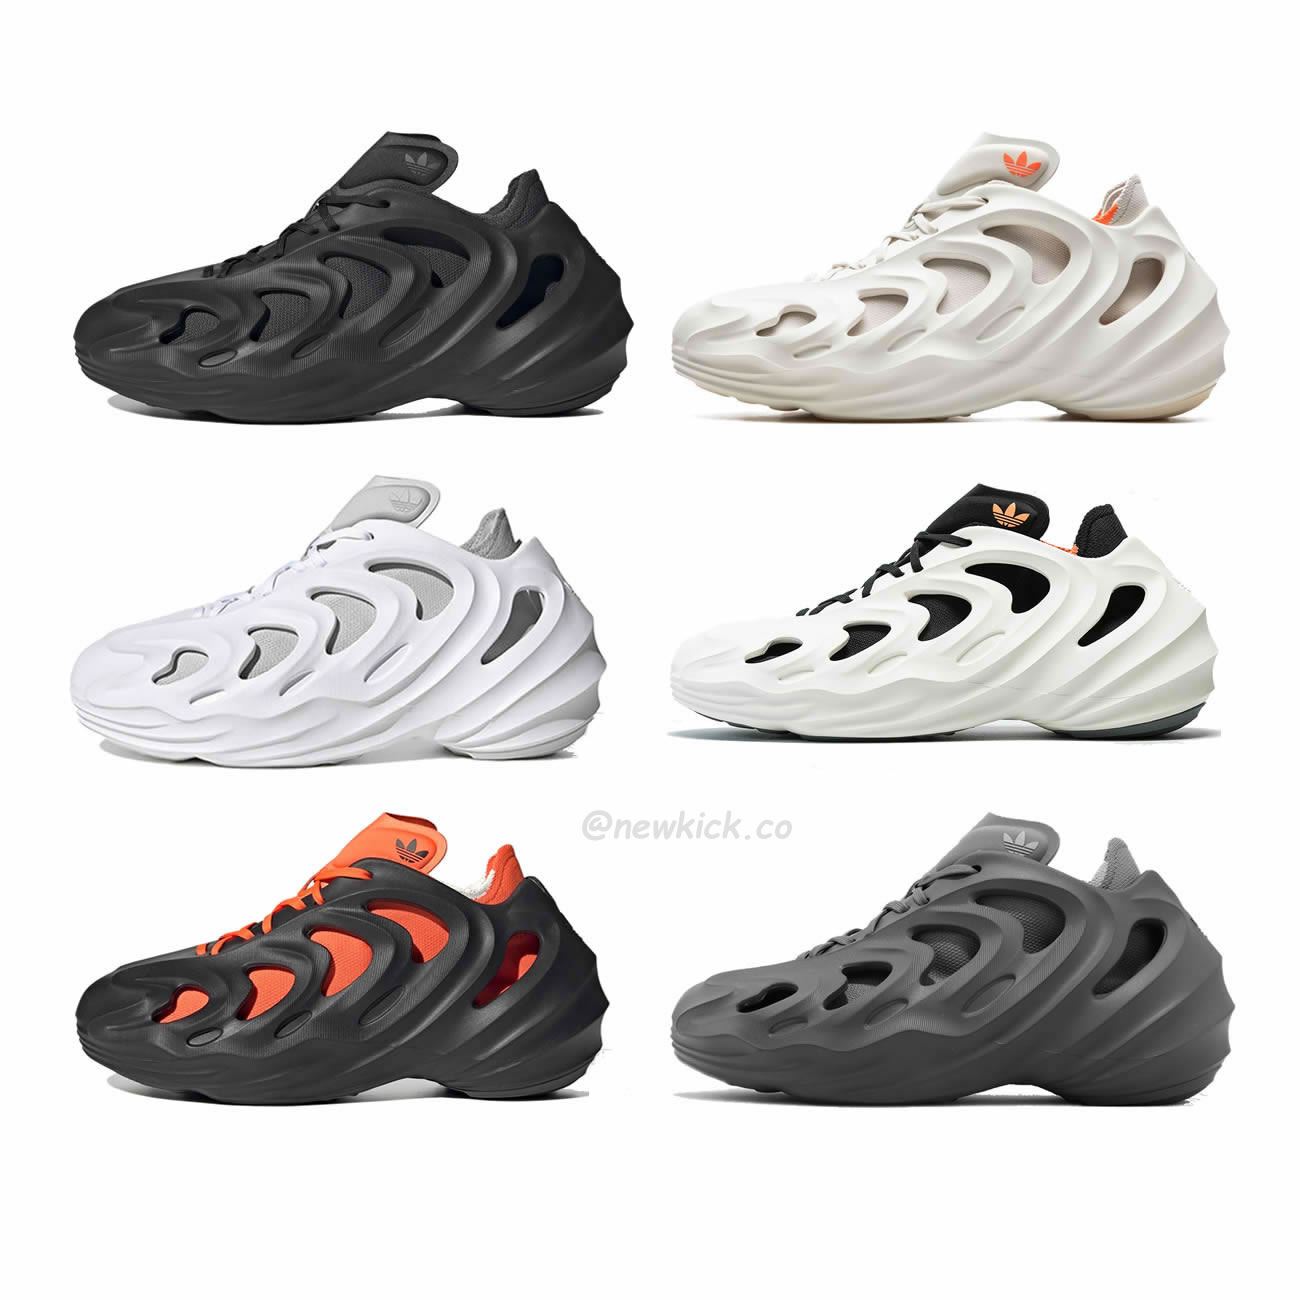 Adidas Adifom Q Wonder White Core Black Orange Grey (1) - newkick.org